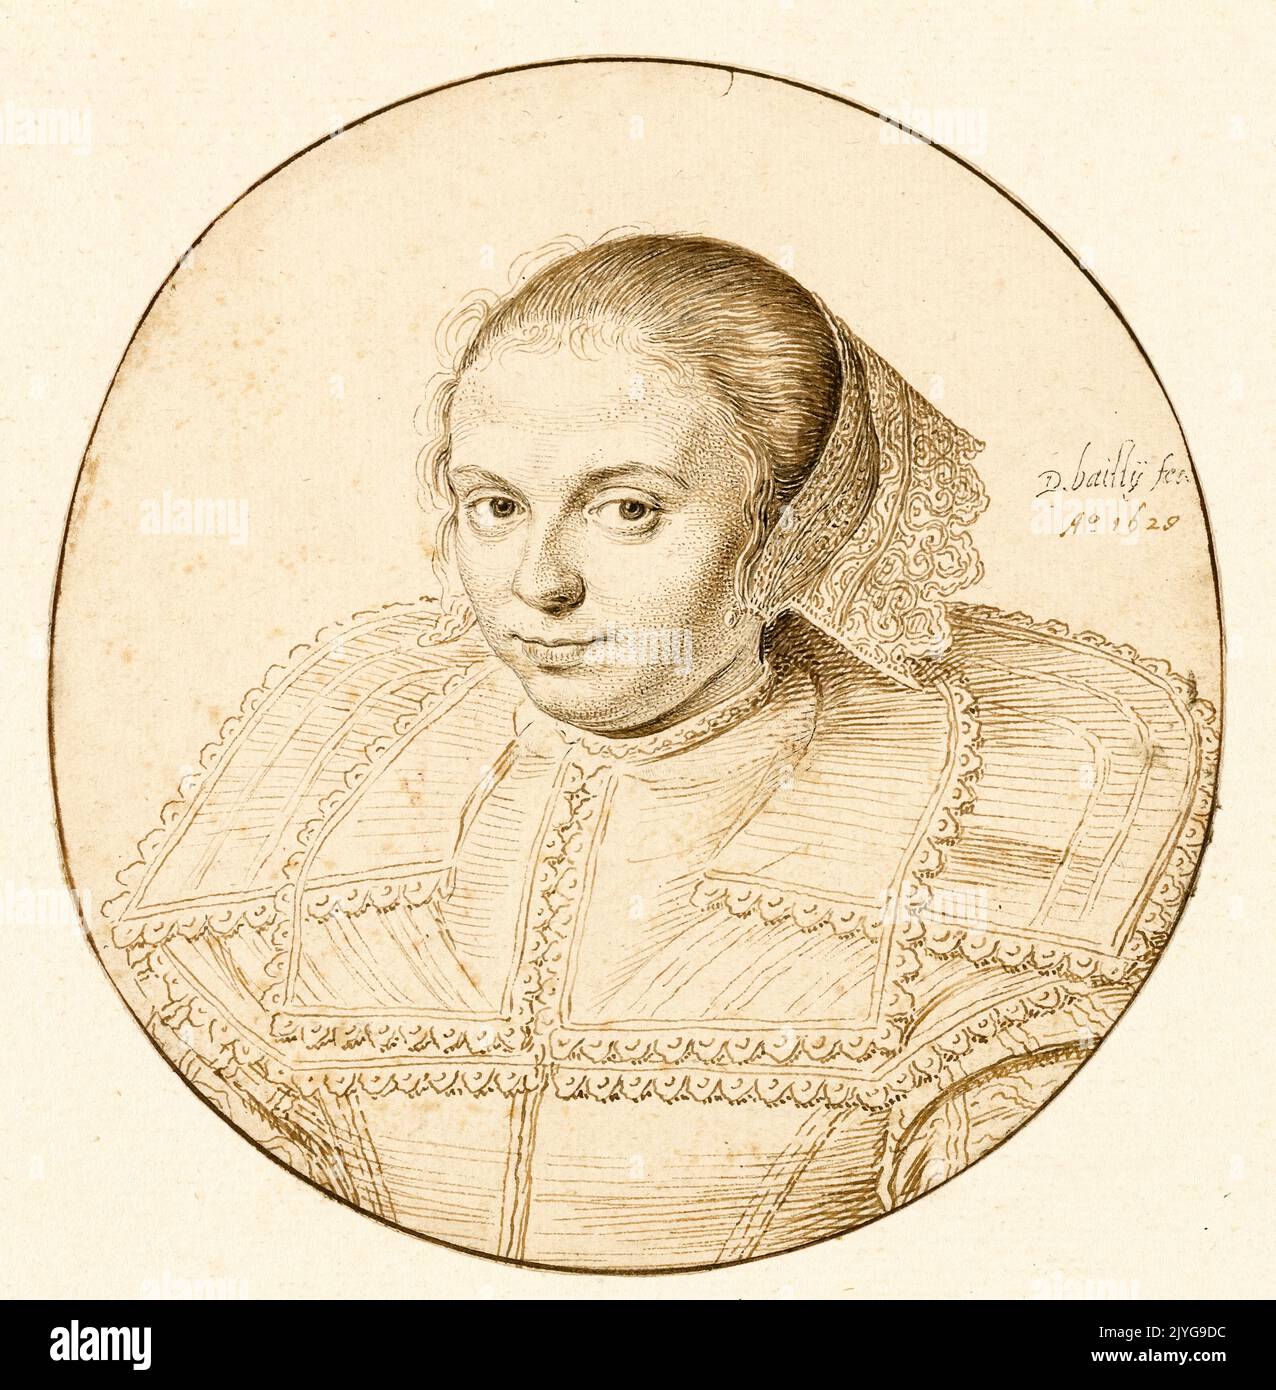 David Bailly, Portrait d'une femme, dessin au stylo et à l'encre, 1629 Banque D'Images